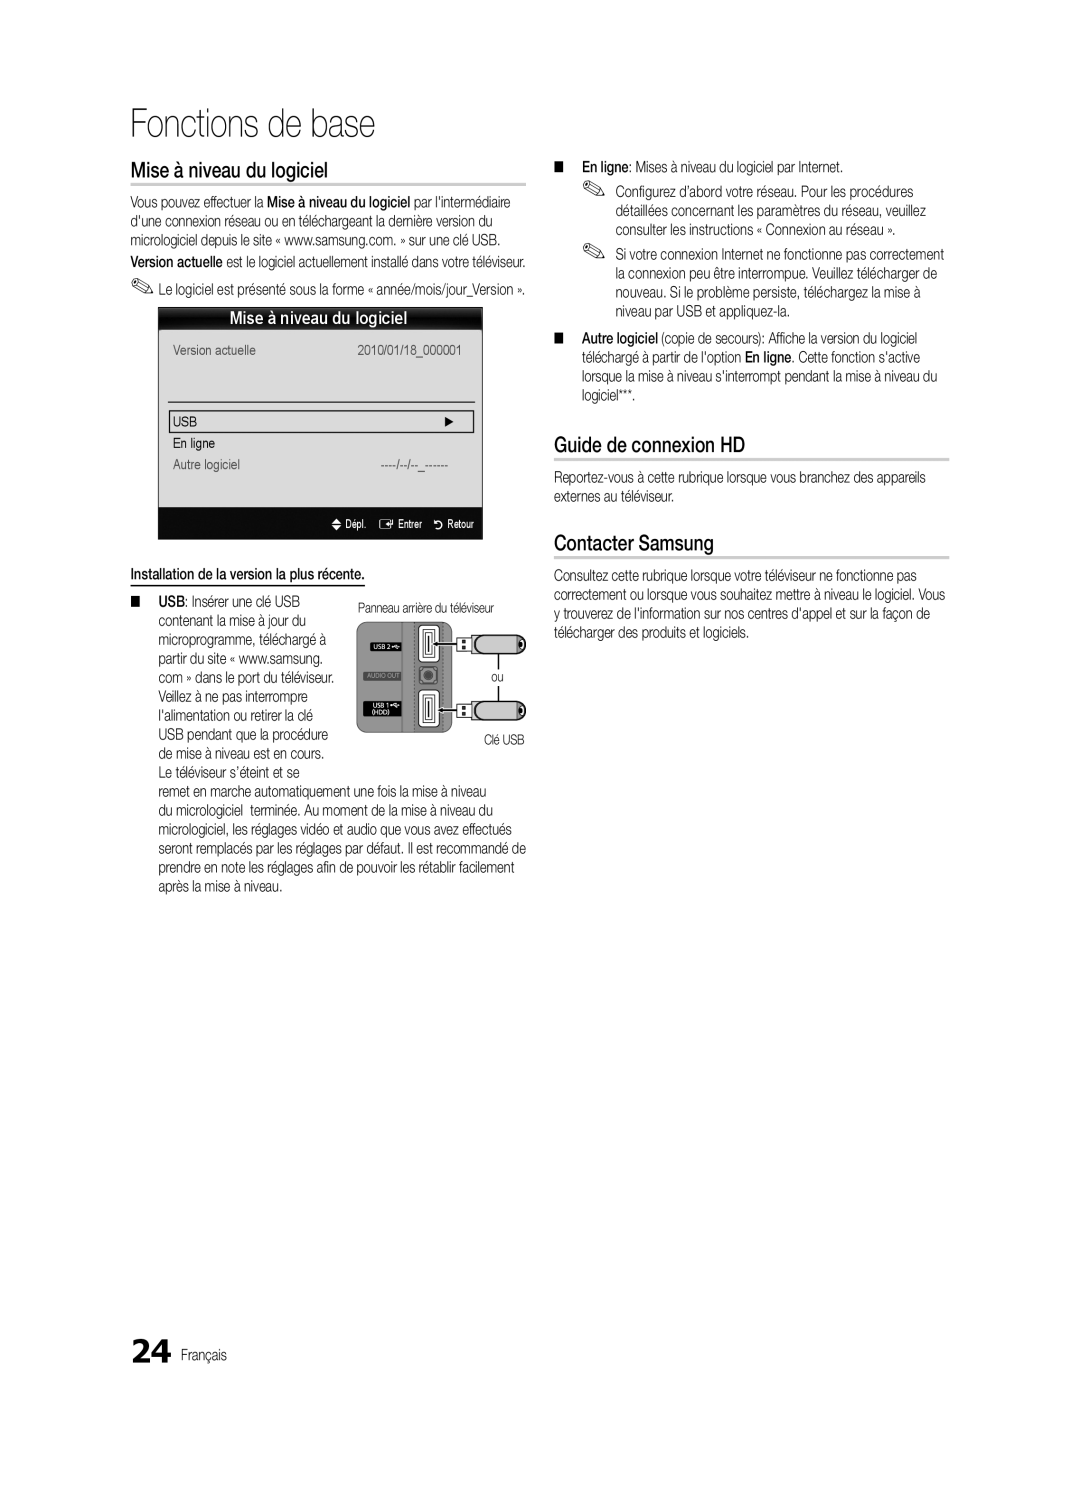 Samsung BN68-03165B-01 Mise à niveau du logiciel, Guide de connexion HD, Contacter Samsung, Fonctions de base, En ligne 